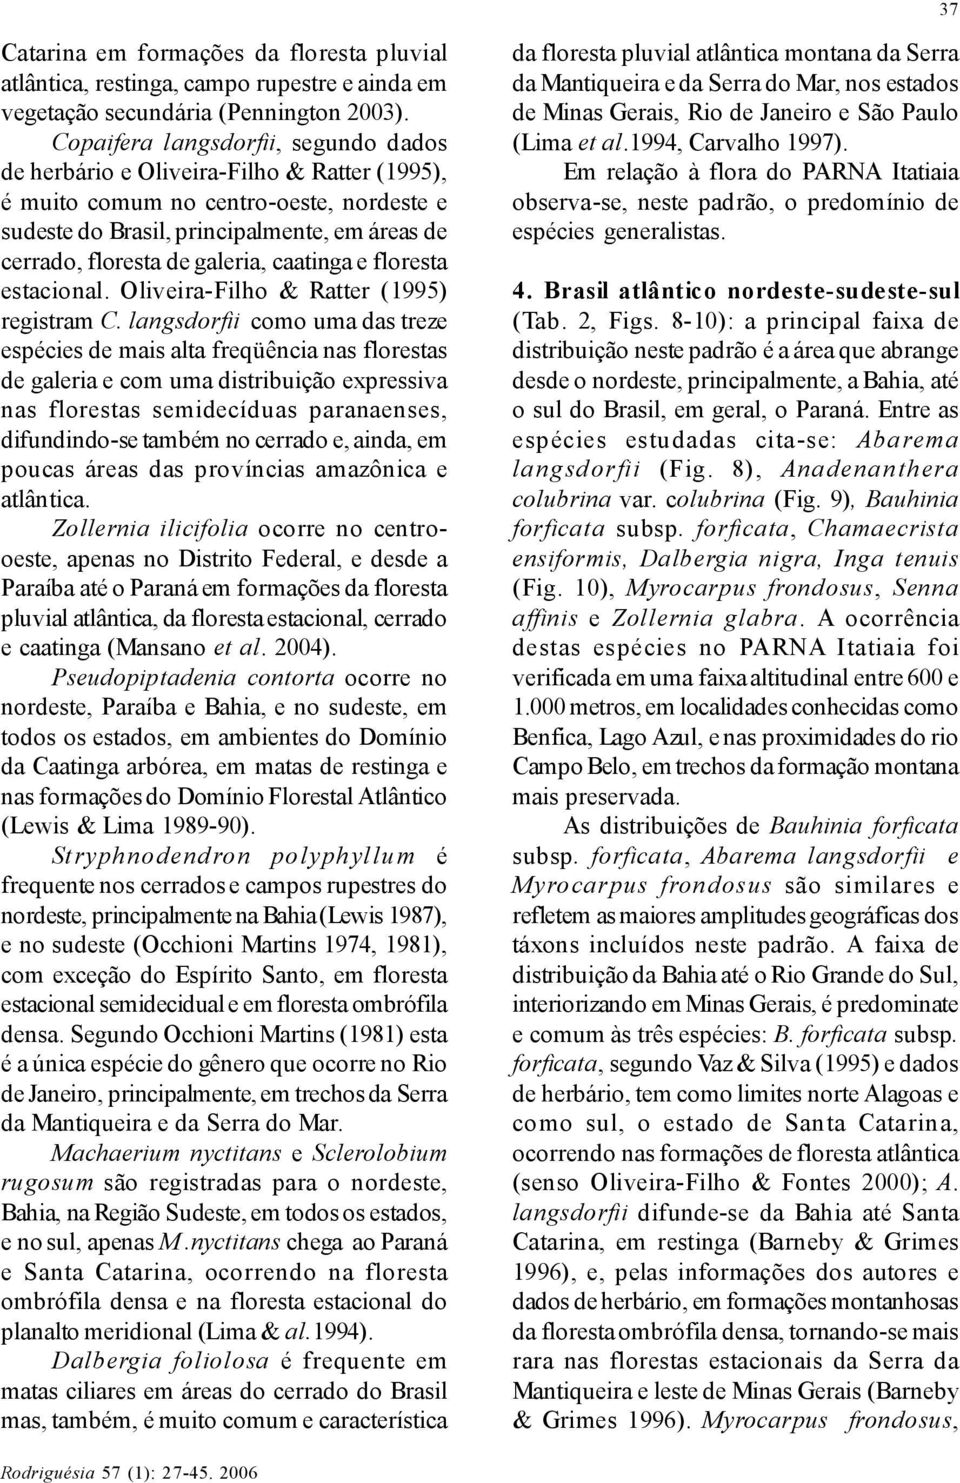 galeria, caatinga e floresta estacional. Oliveira-Filho & Ratter (1995) registram C.